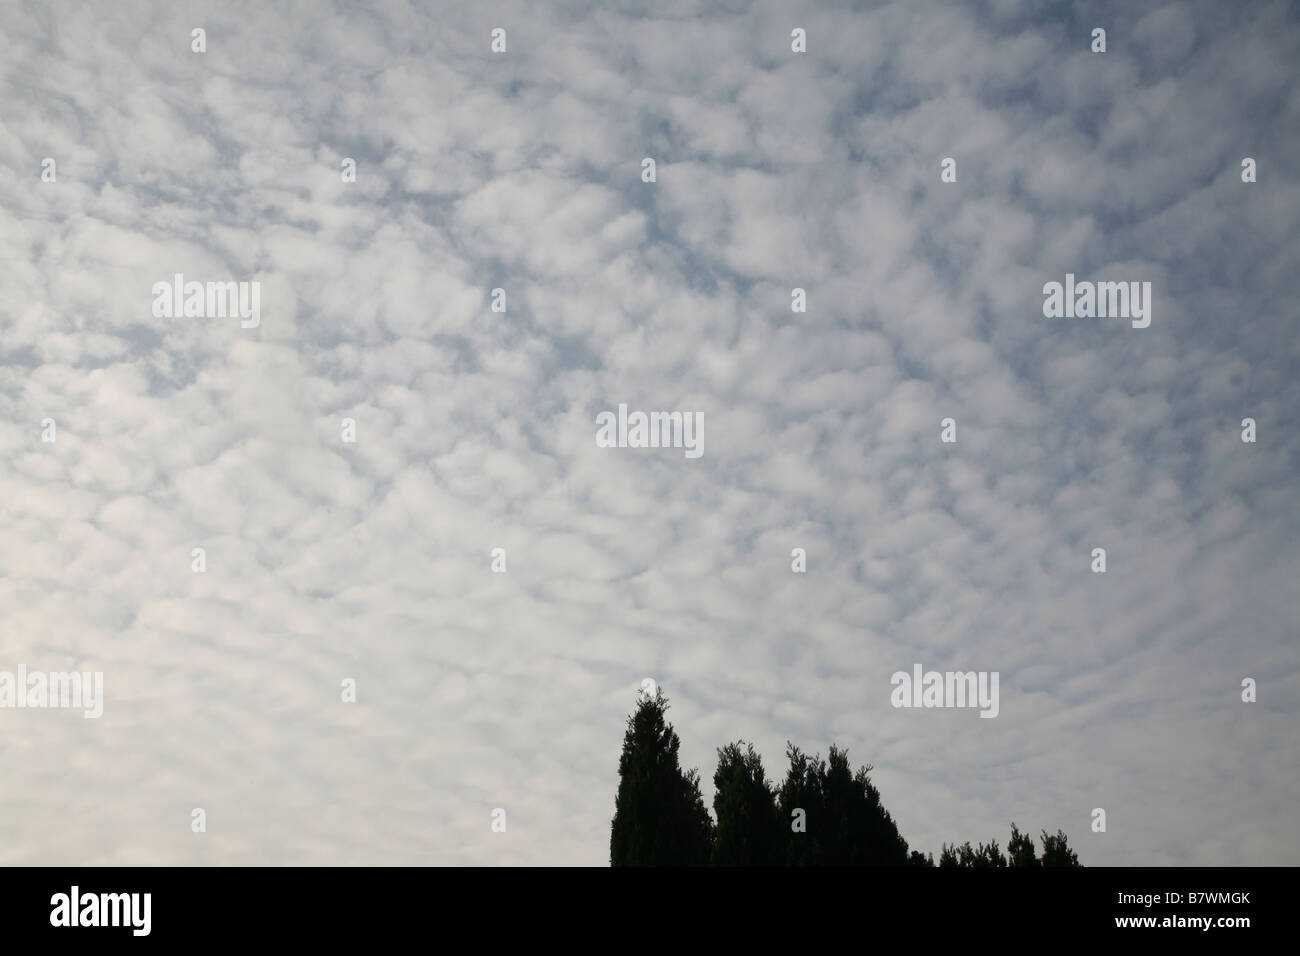 Altocumulus Makrele Himmel Kumuluswolke Angabe atmosphärischen Instabilität bei Zwischenebenen in der Atmosphäre Stockfoto